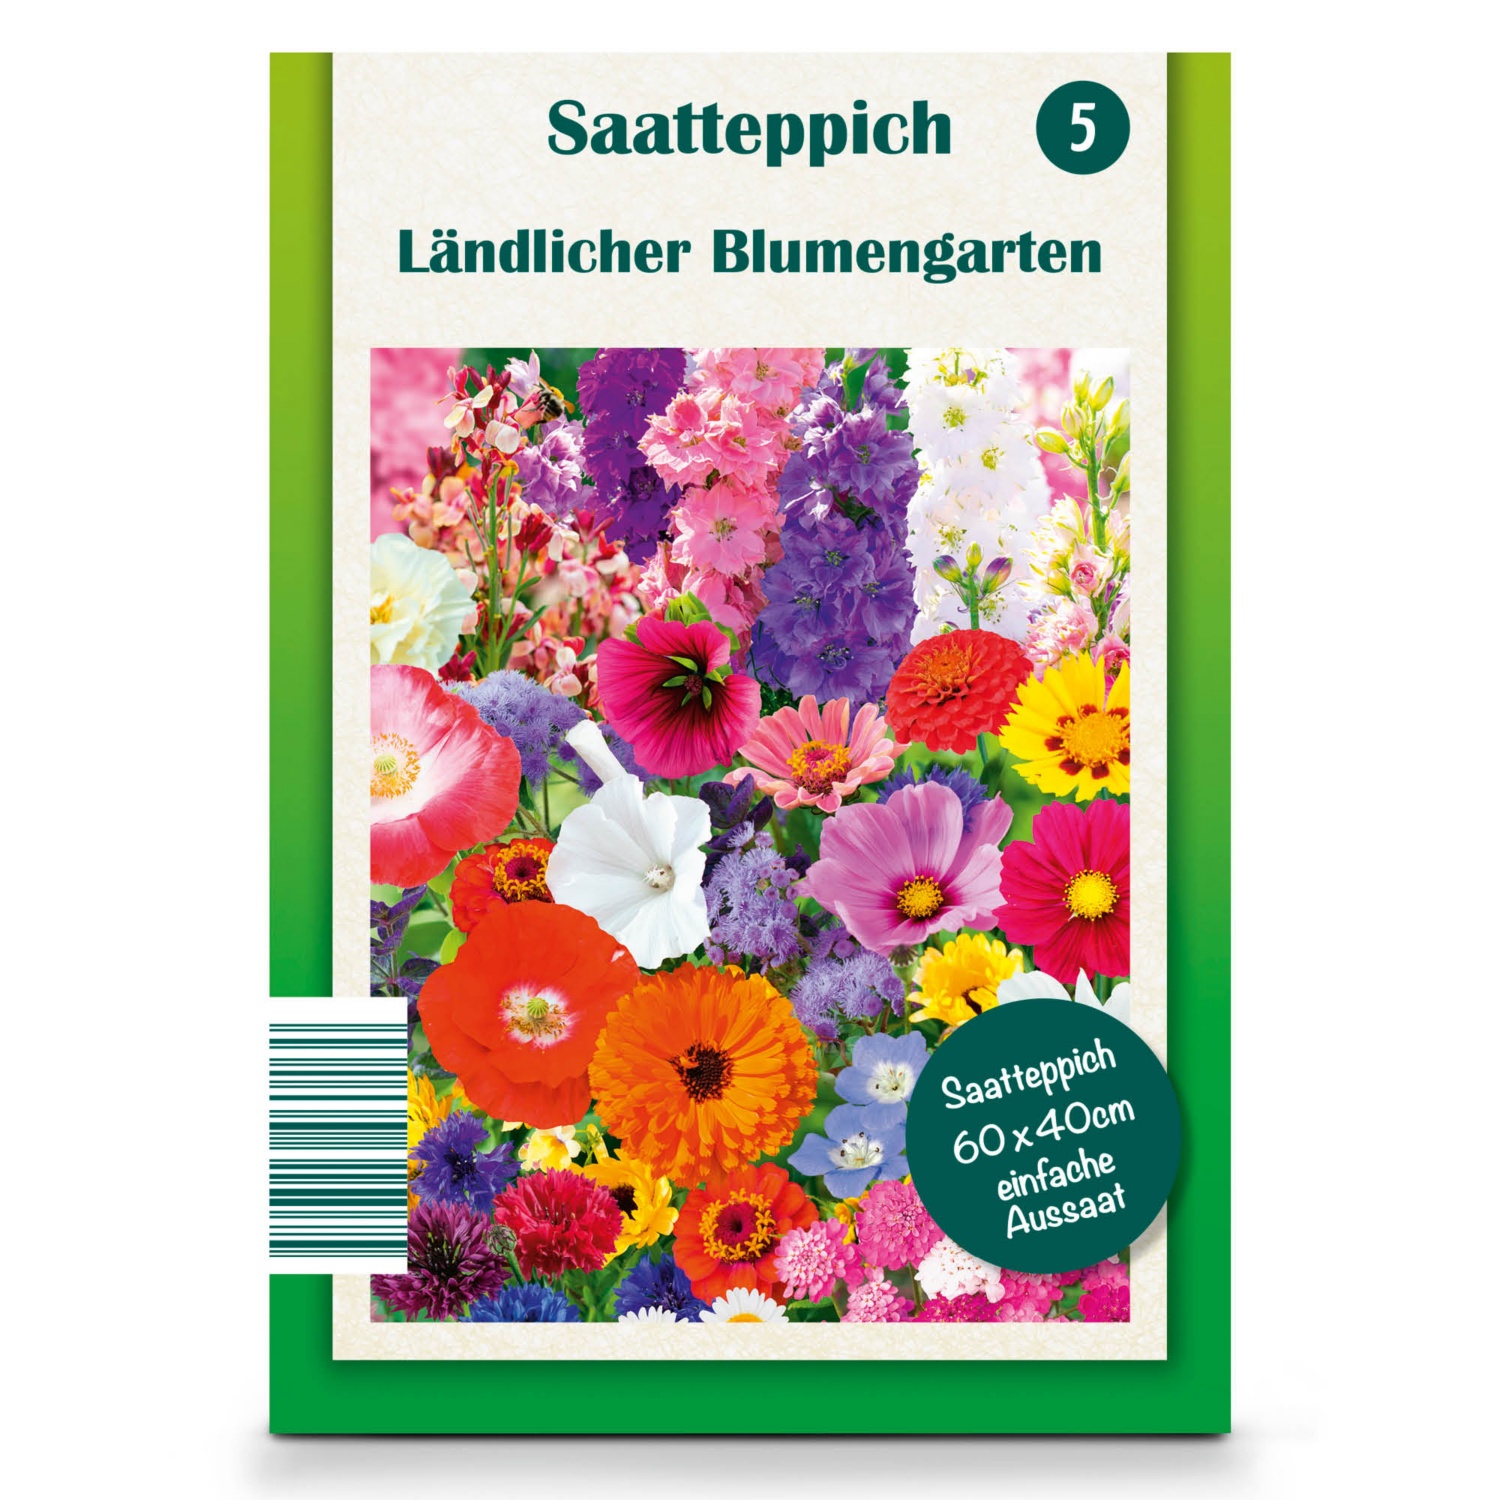 Saatteppich/Blumen-Saatteppich